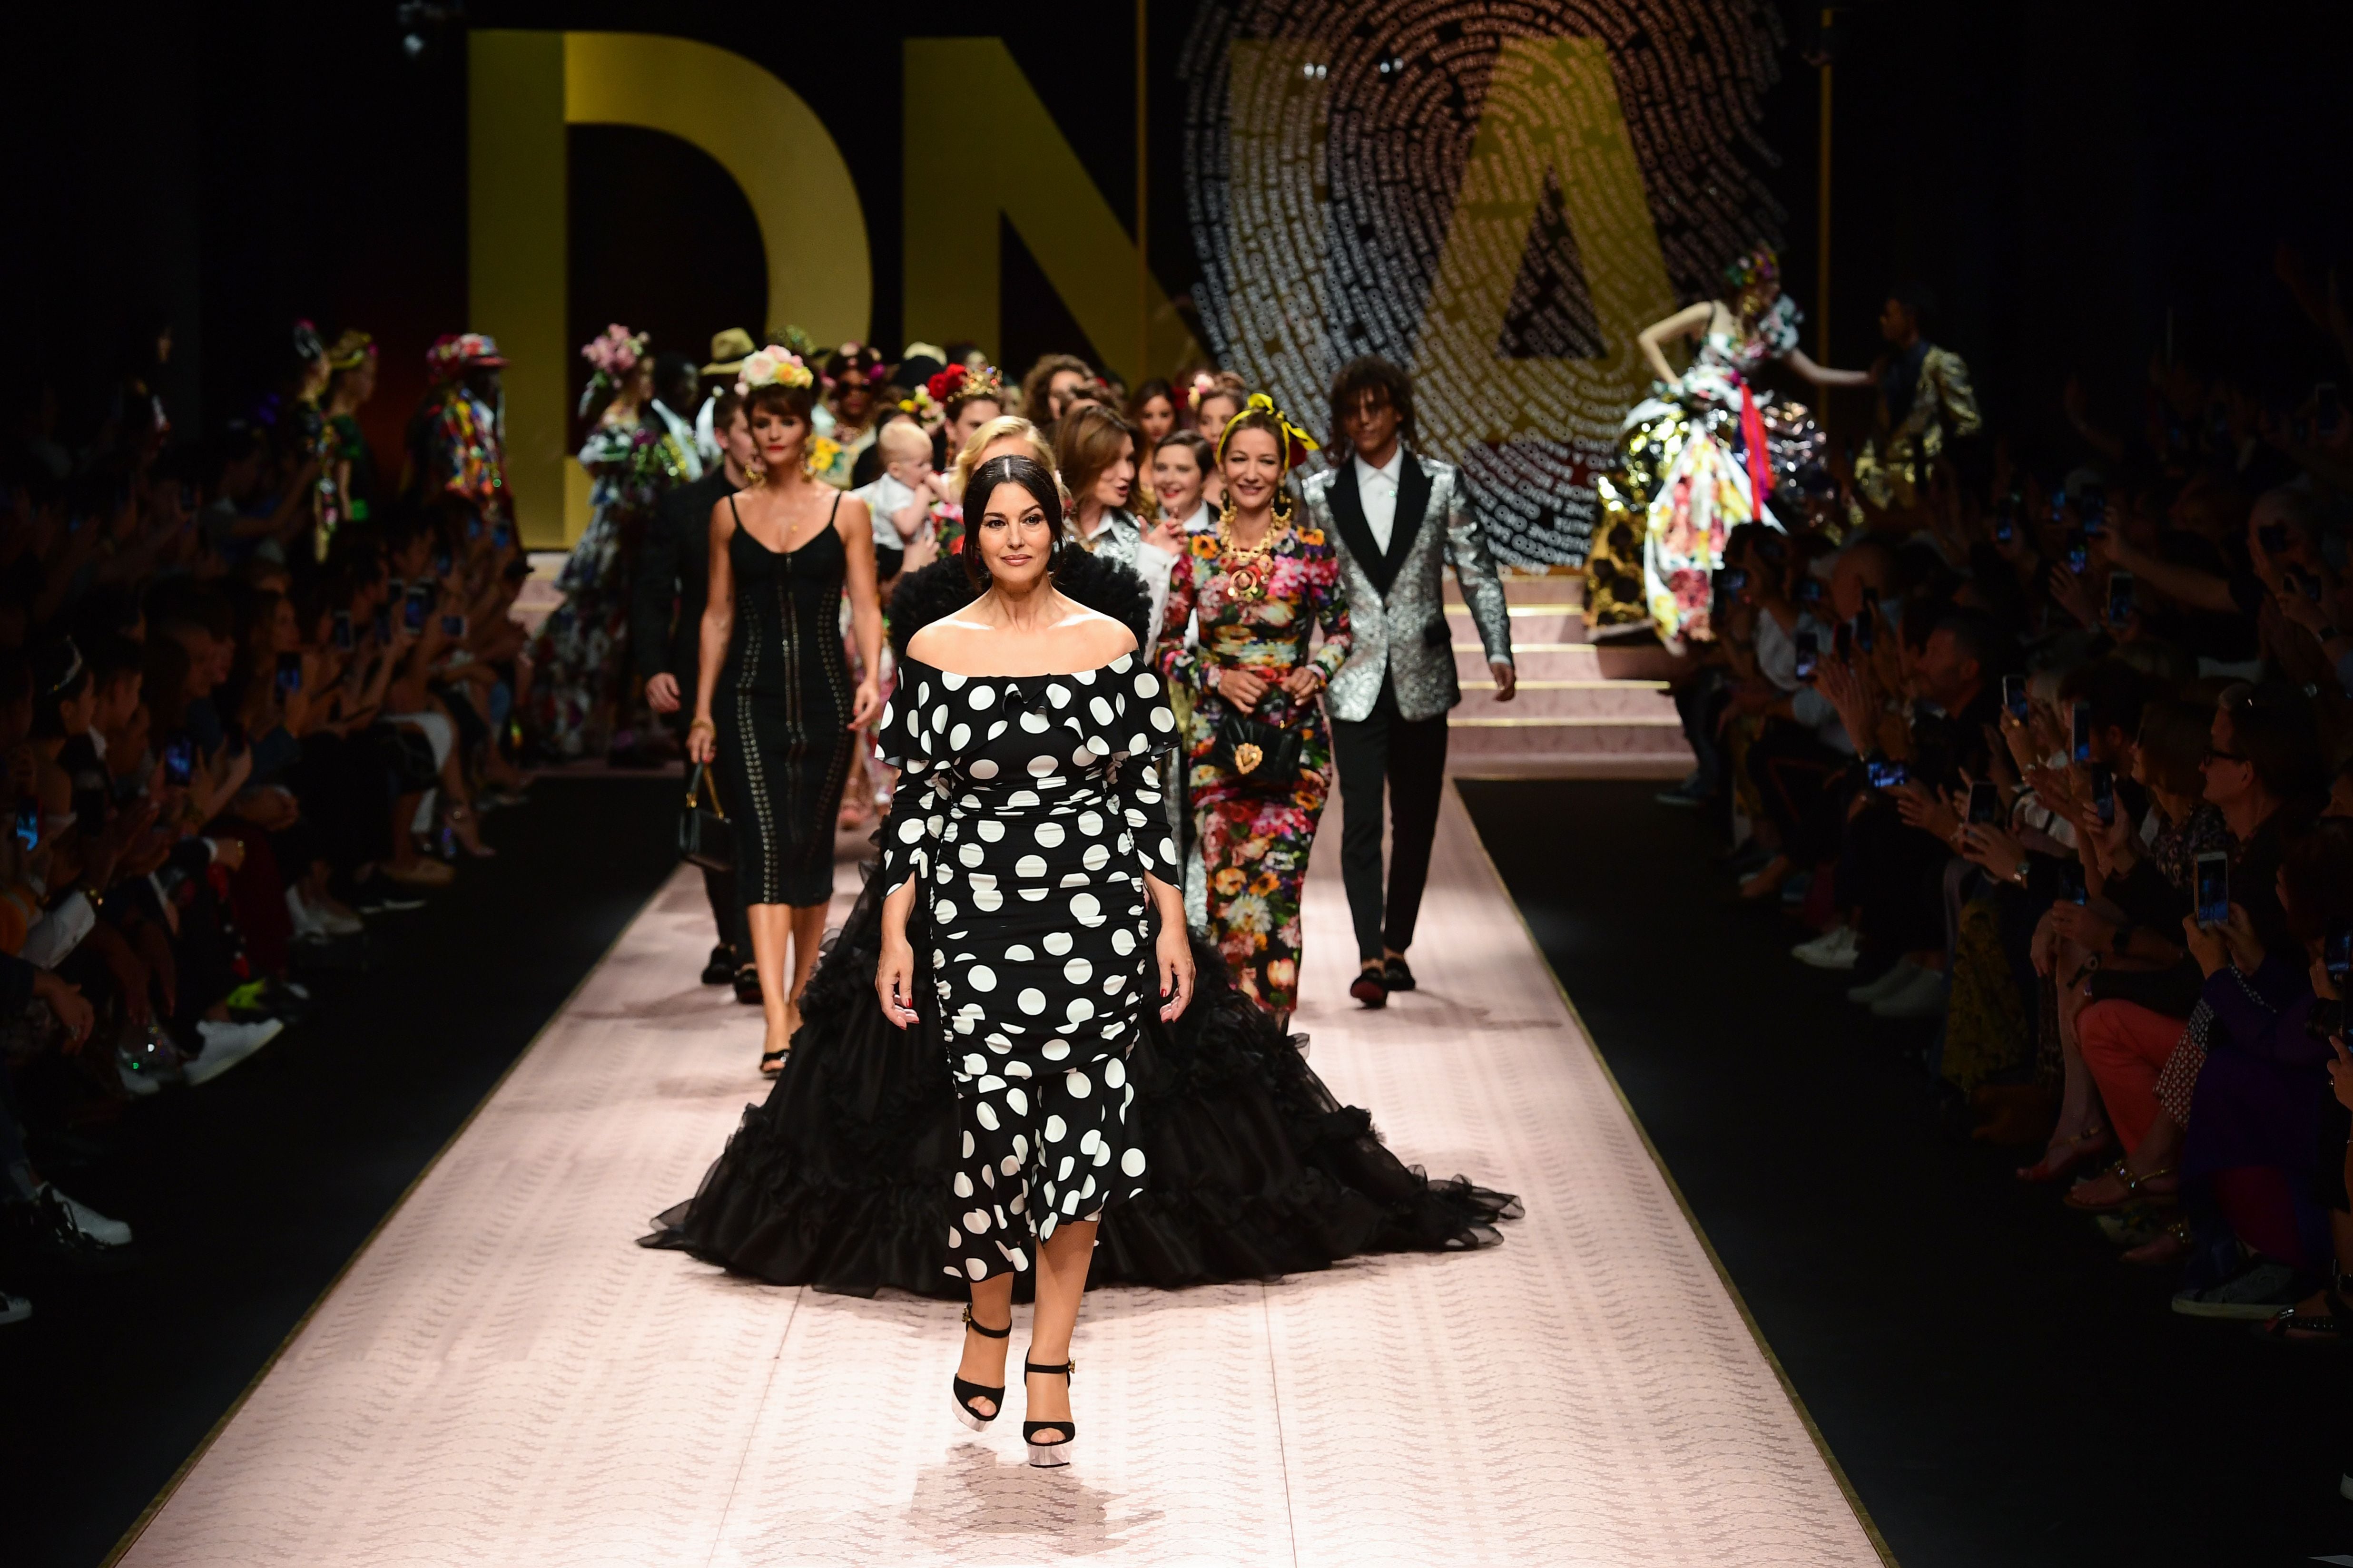 Dolce & Gabbana - Dolce&Gabbana Spring Summer 2019 Women's Fashion Show.  #DGDNA #DGWomenSS19 #DolceGabbana